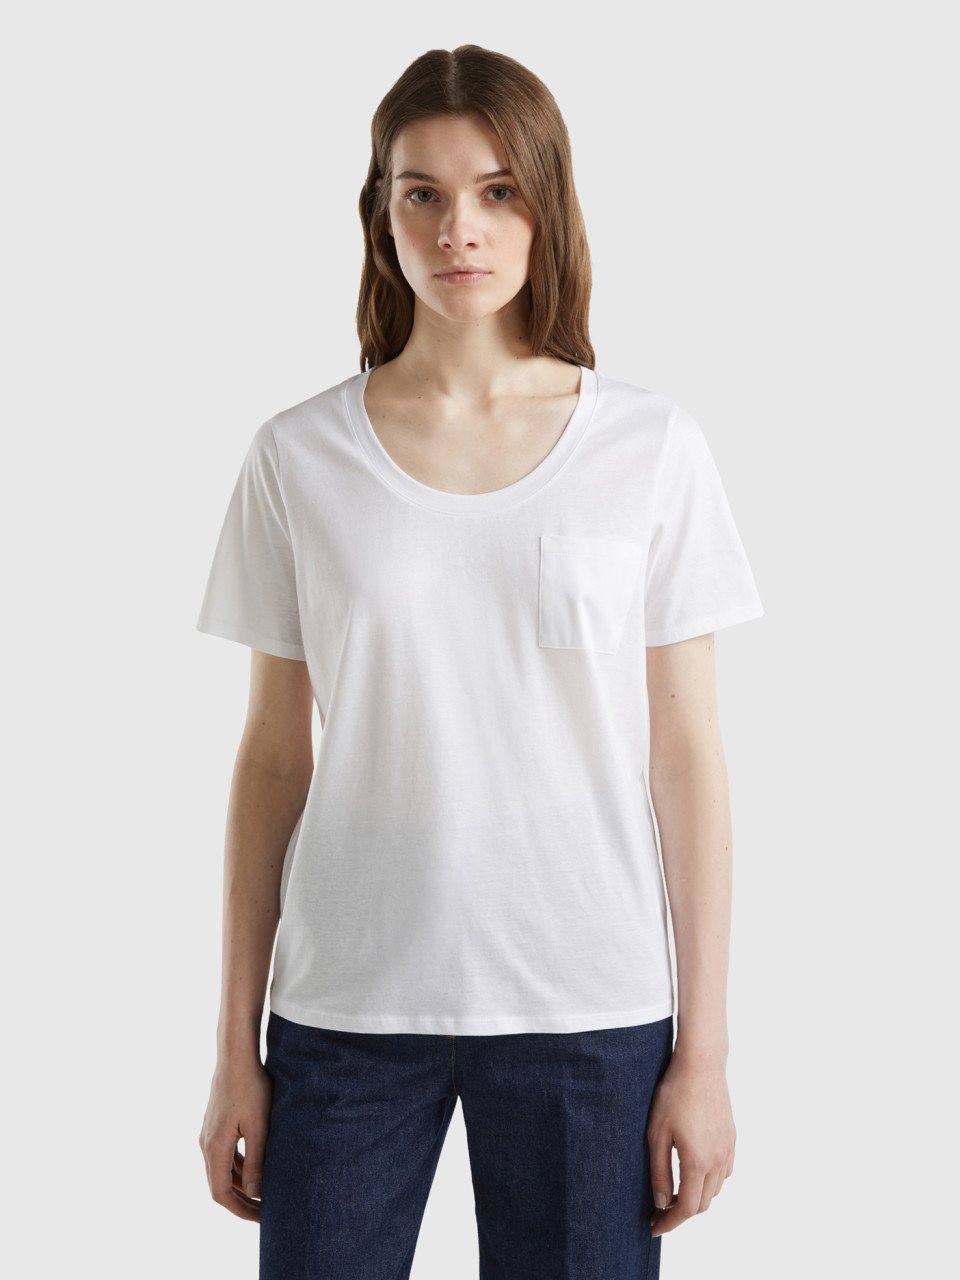 Benetton, T-shirt With Satin Pocket, White, Women